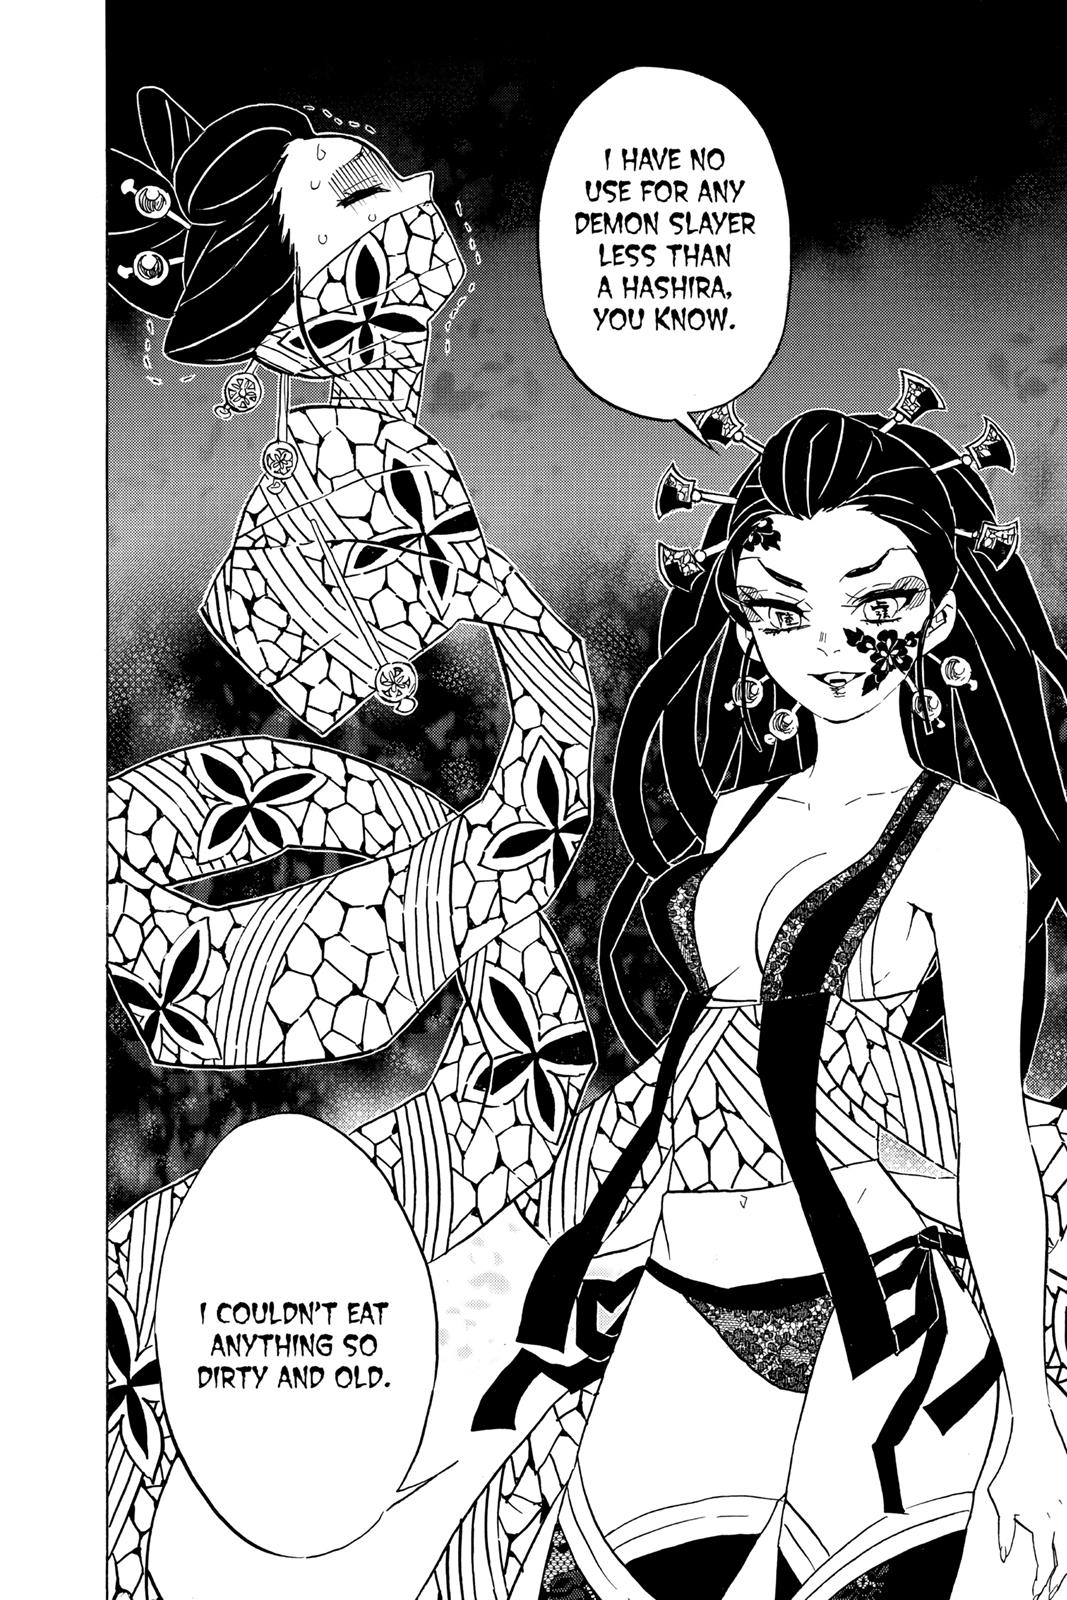 Demon Slayer Manga Manga Chapter - 76 - image 7